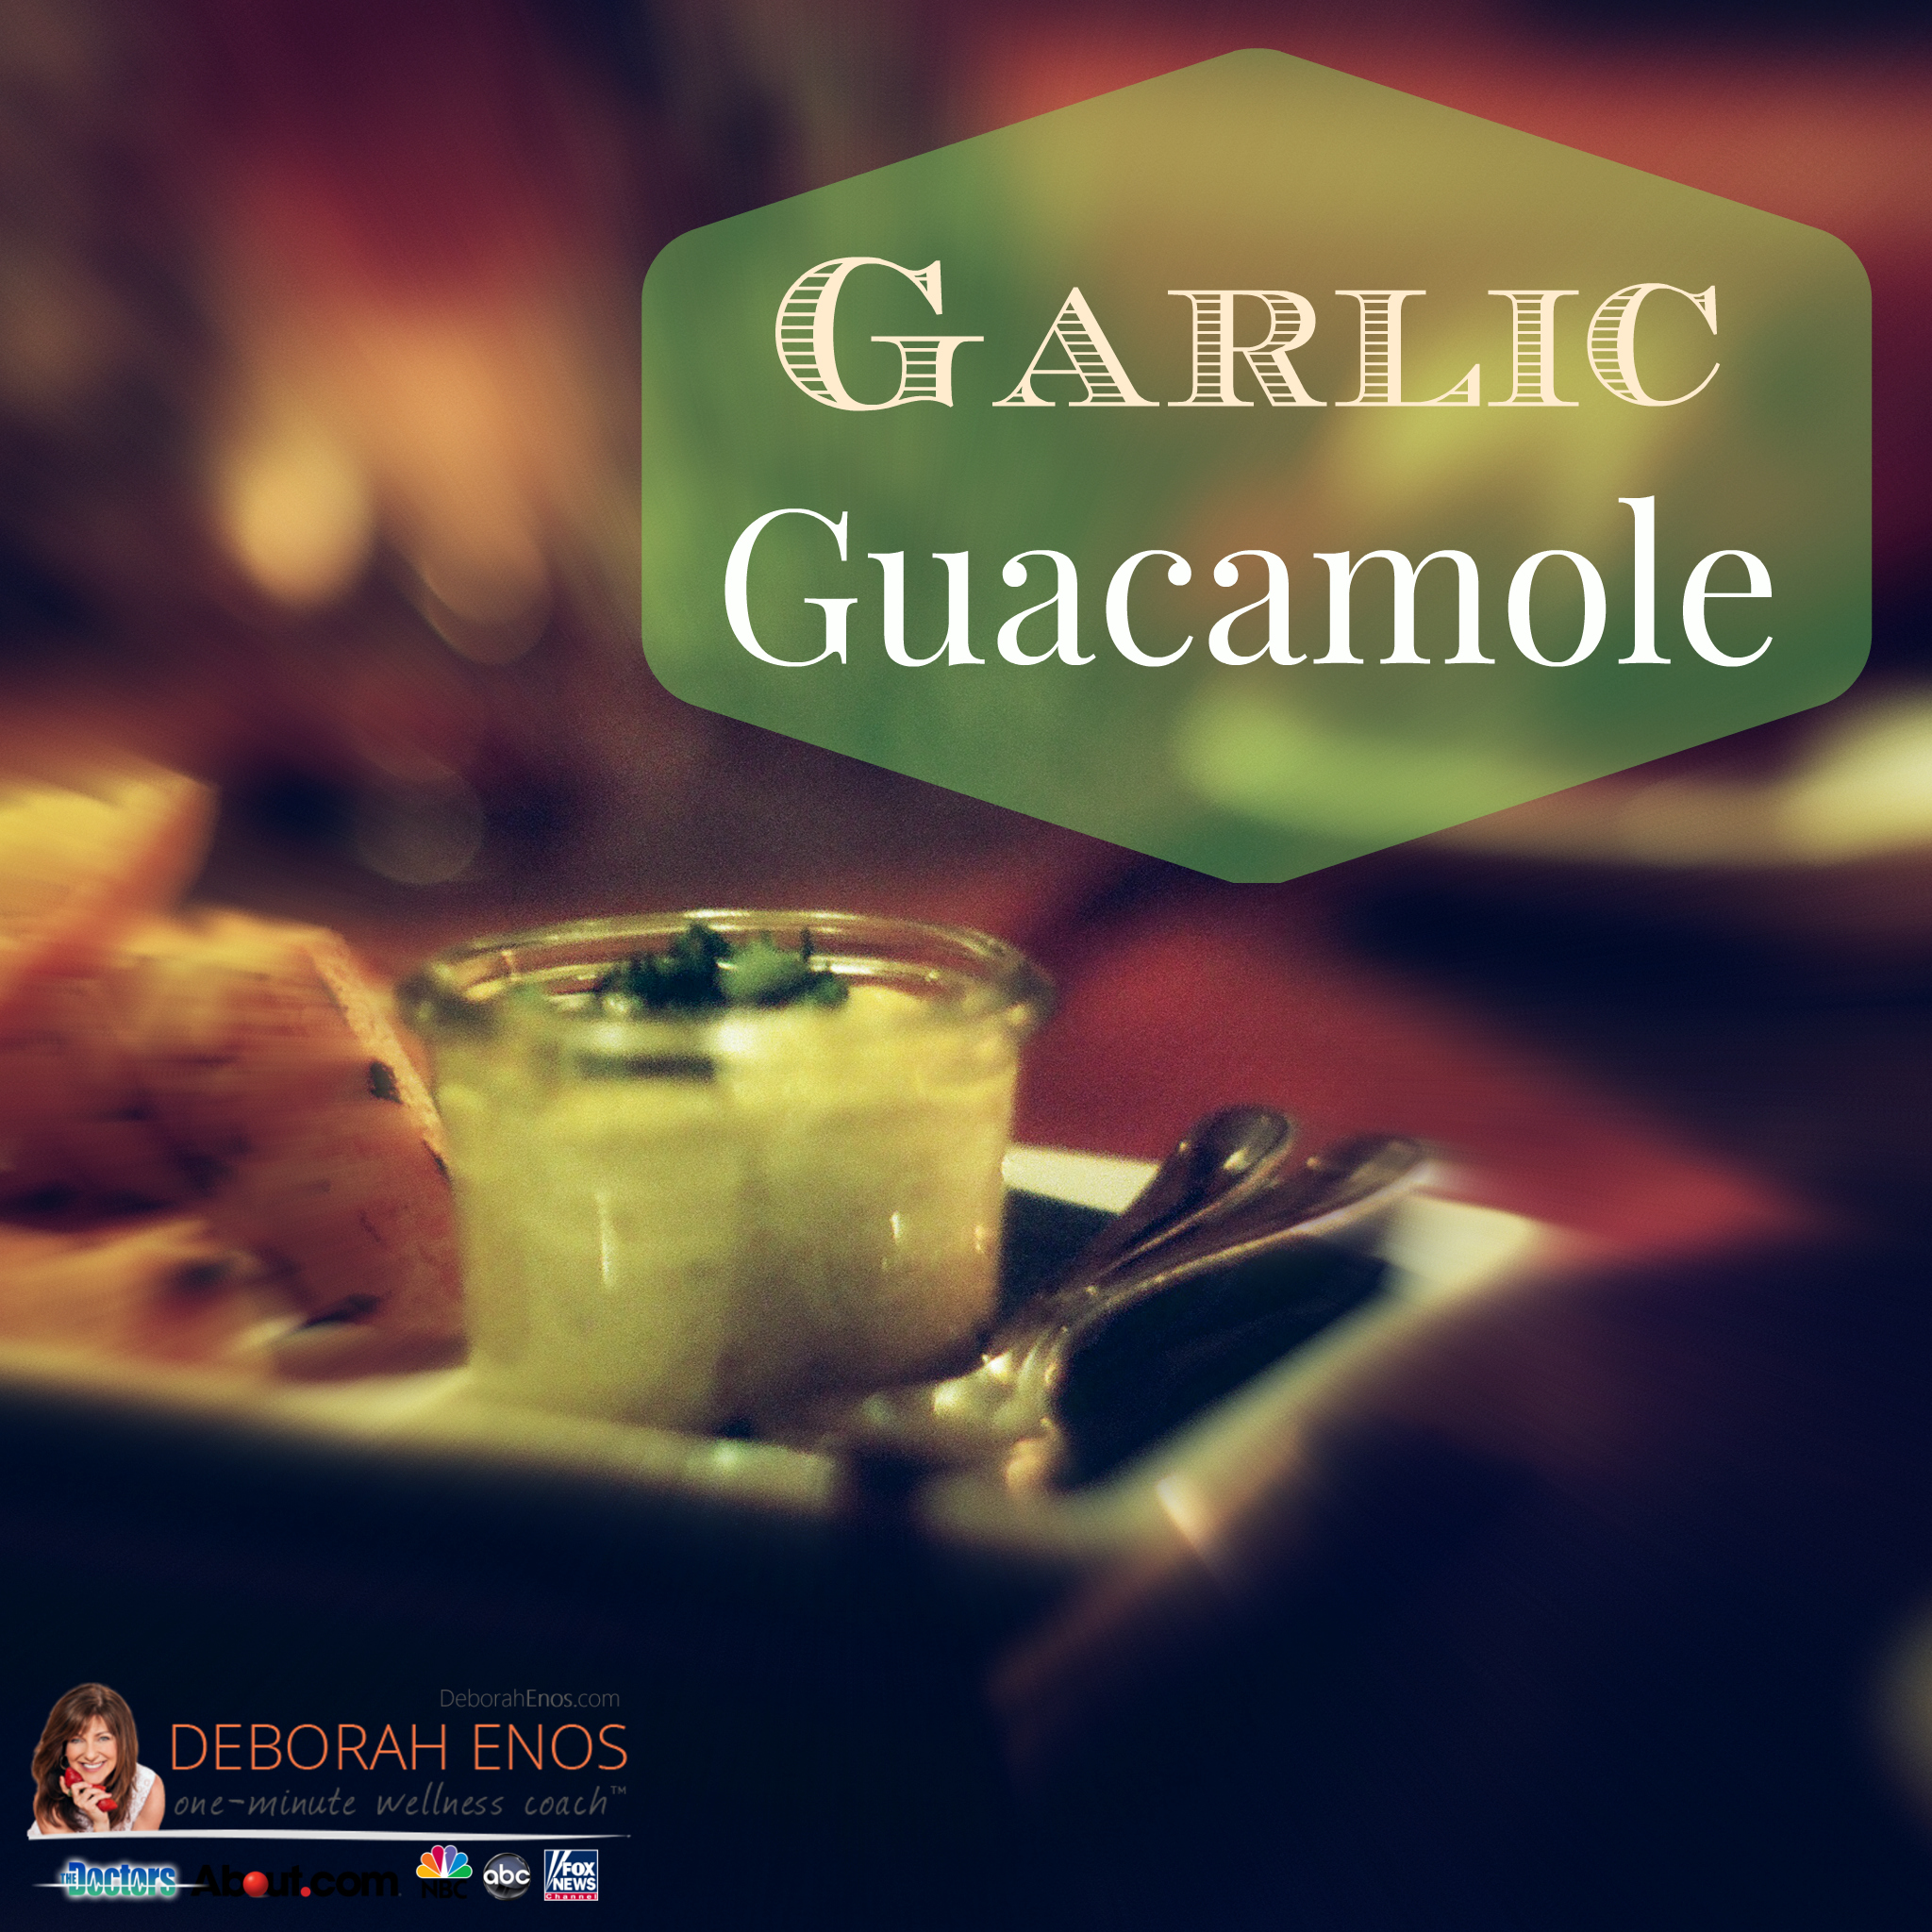 garlic guacamole recipe healthy pregame football snacks